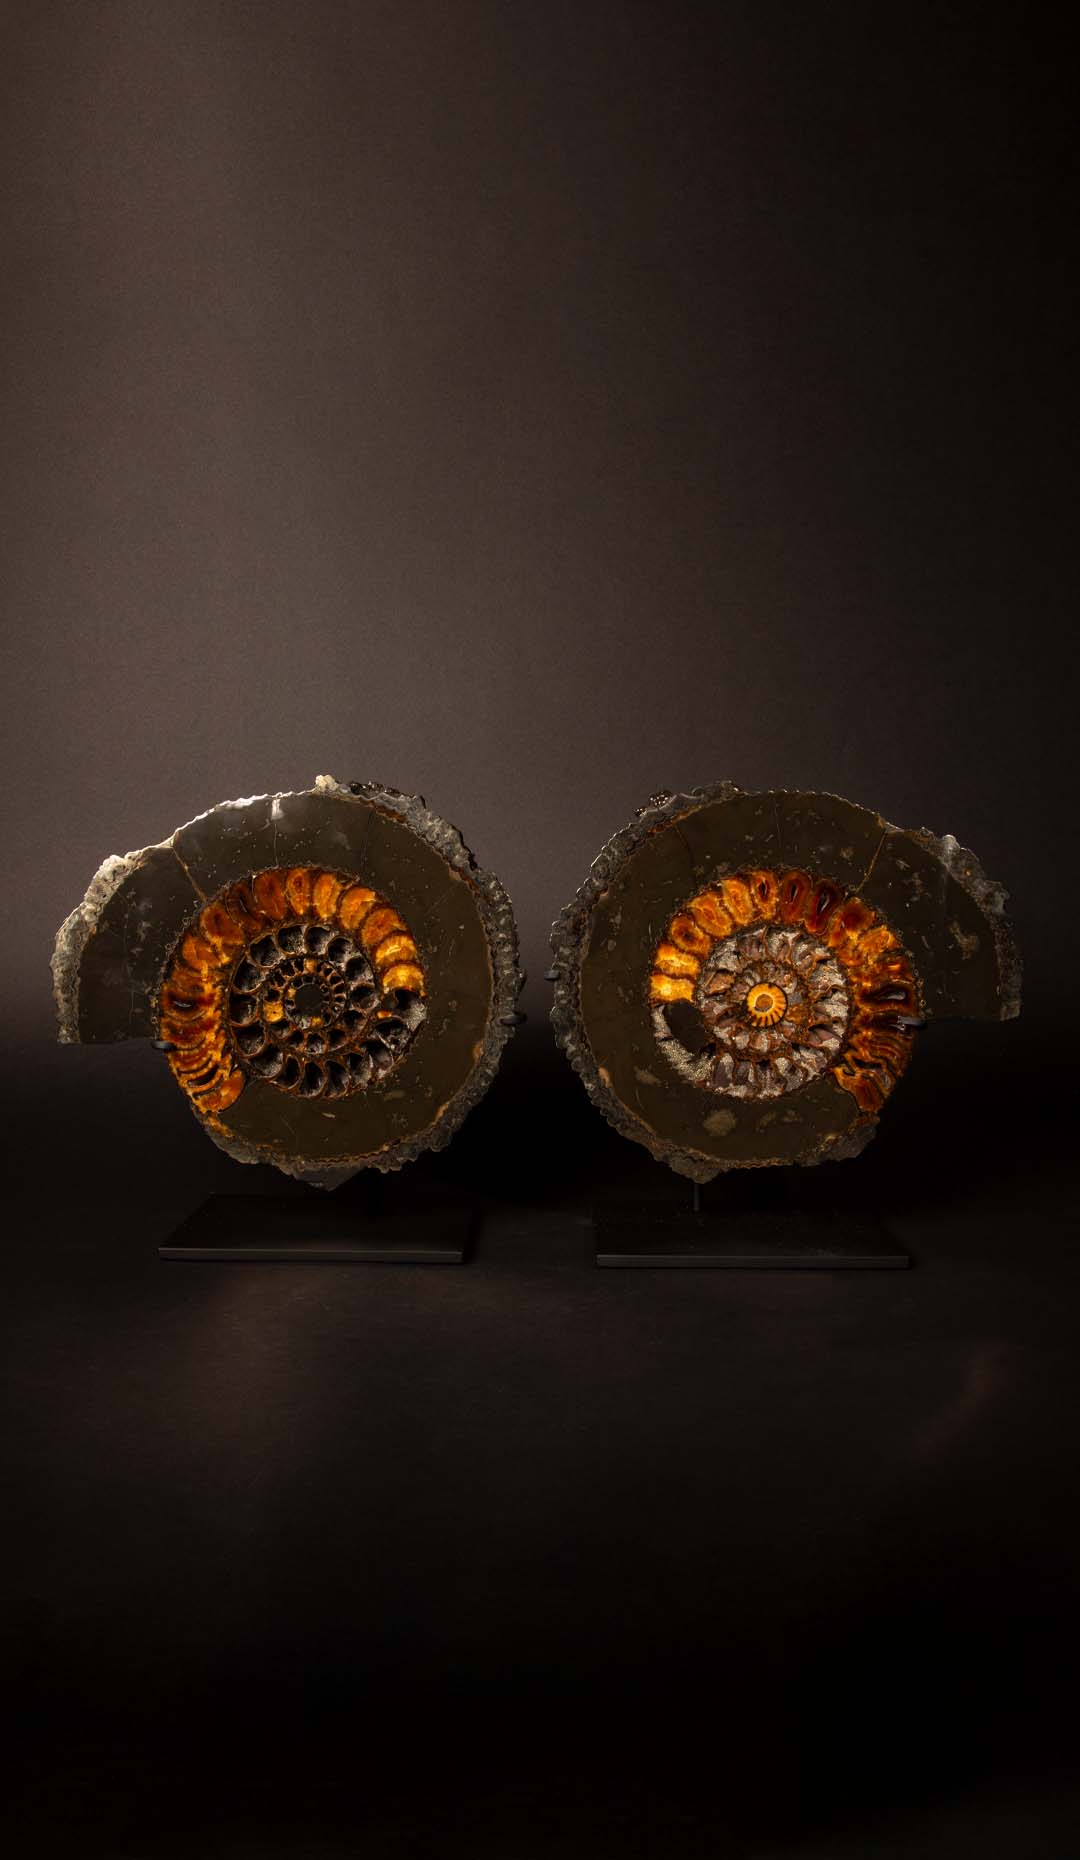 Pyritized Ammonite Pair, 10